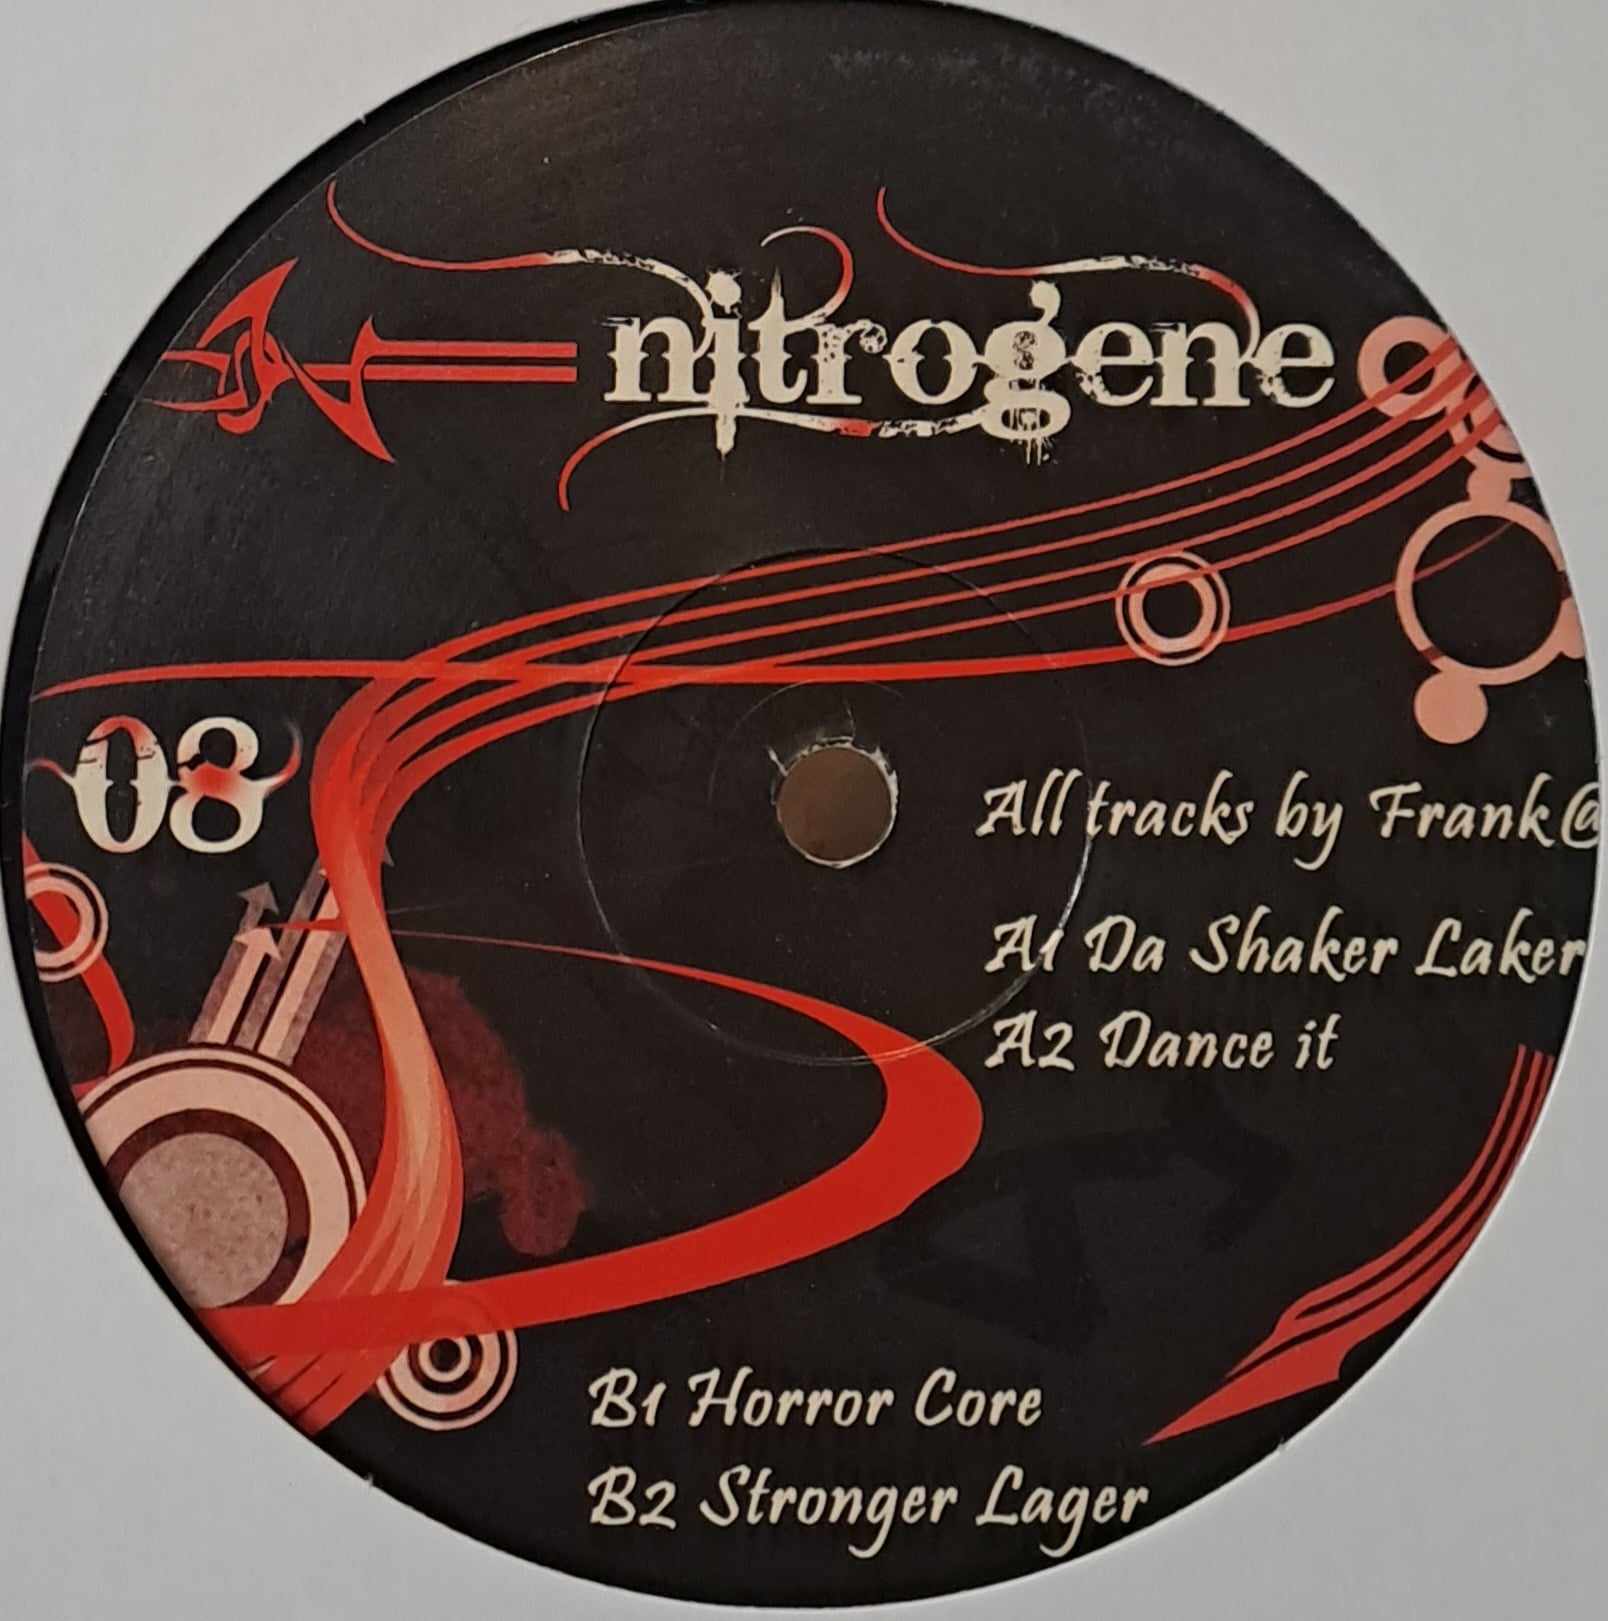 Nitrogene 008 - vinyle tribecore